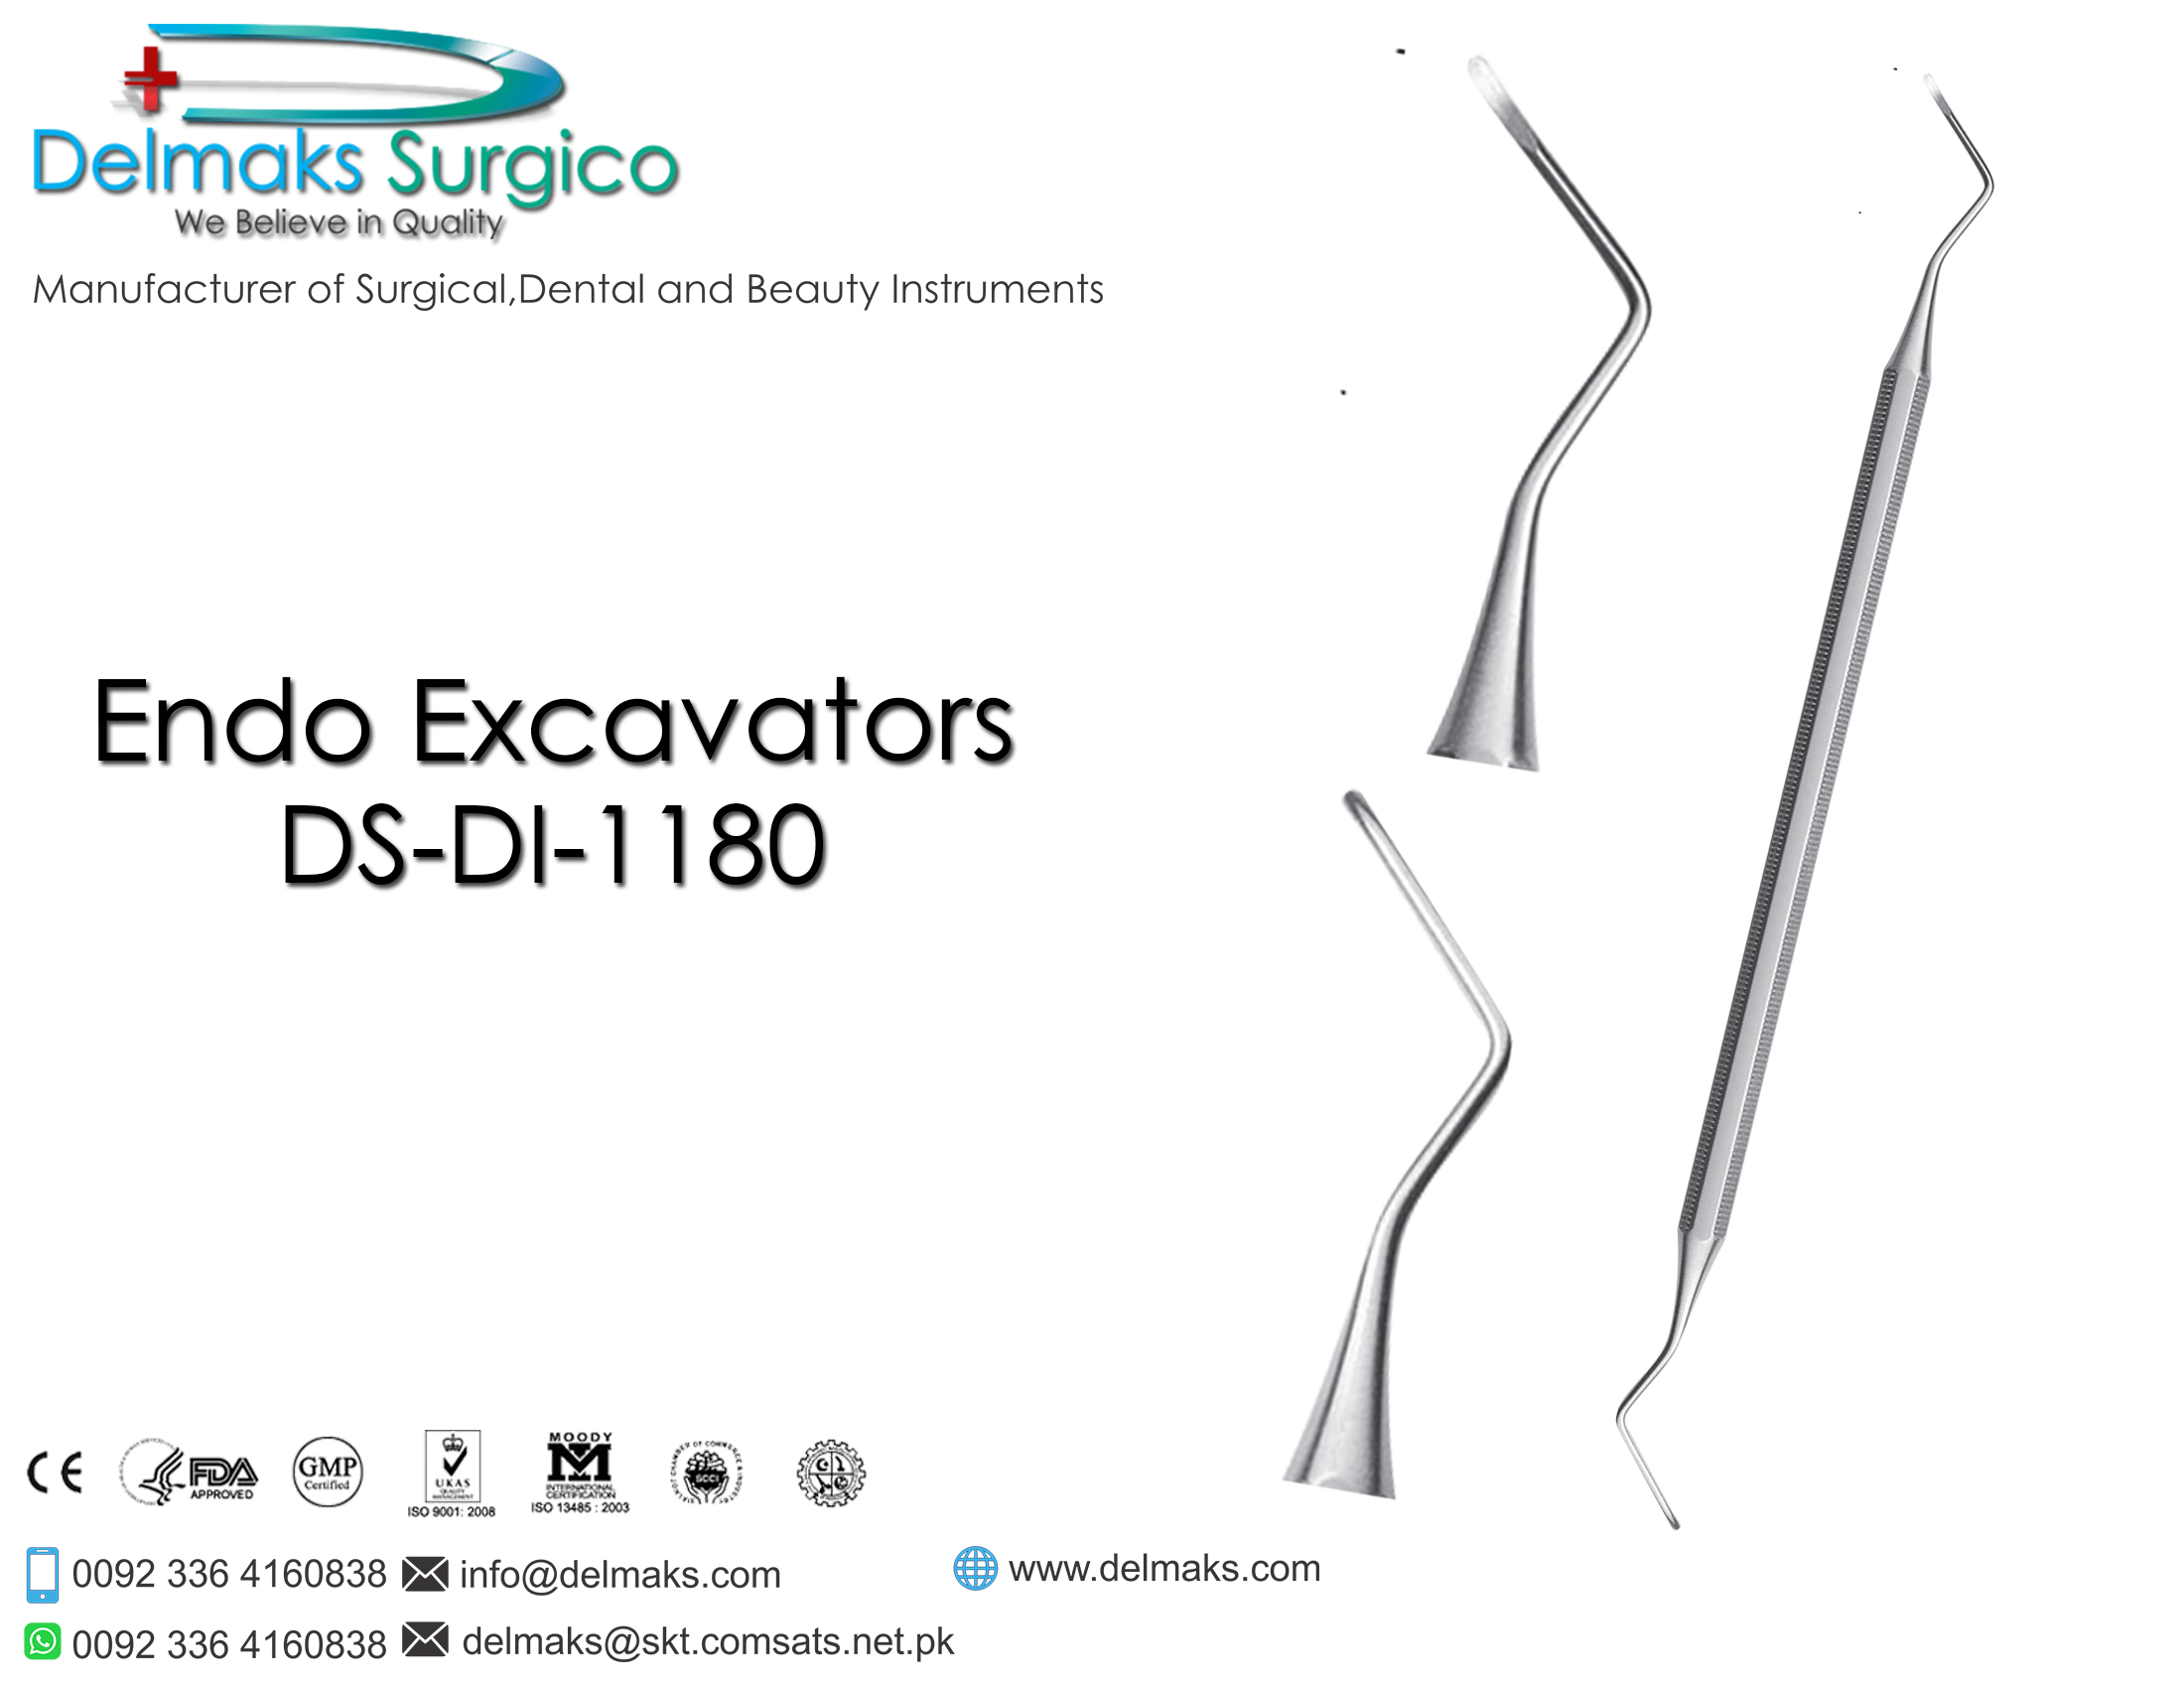 Endo Excavators-Endodontic Instruments-Dental Instruments-Delmaks Surgico